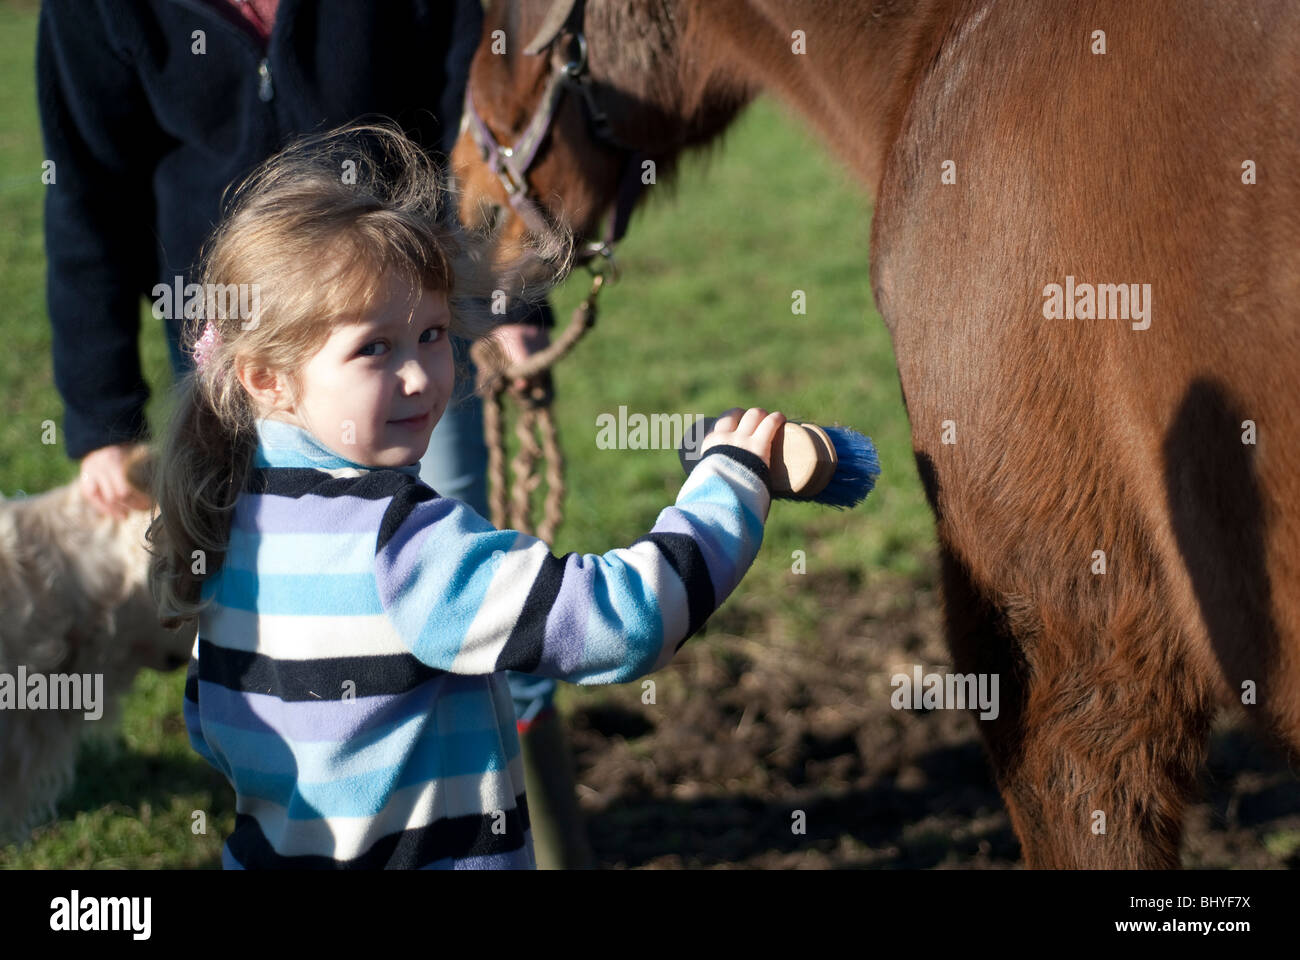 Joven mascota cepillado caballo. Modelo completamente liberado Foto de stock